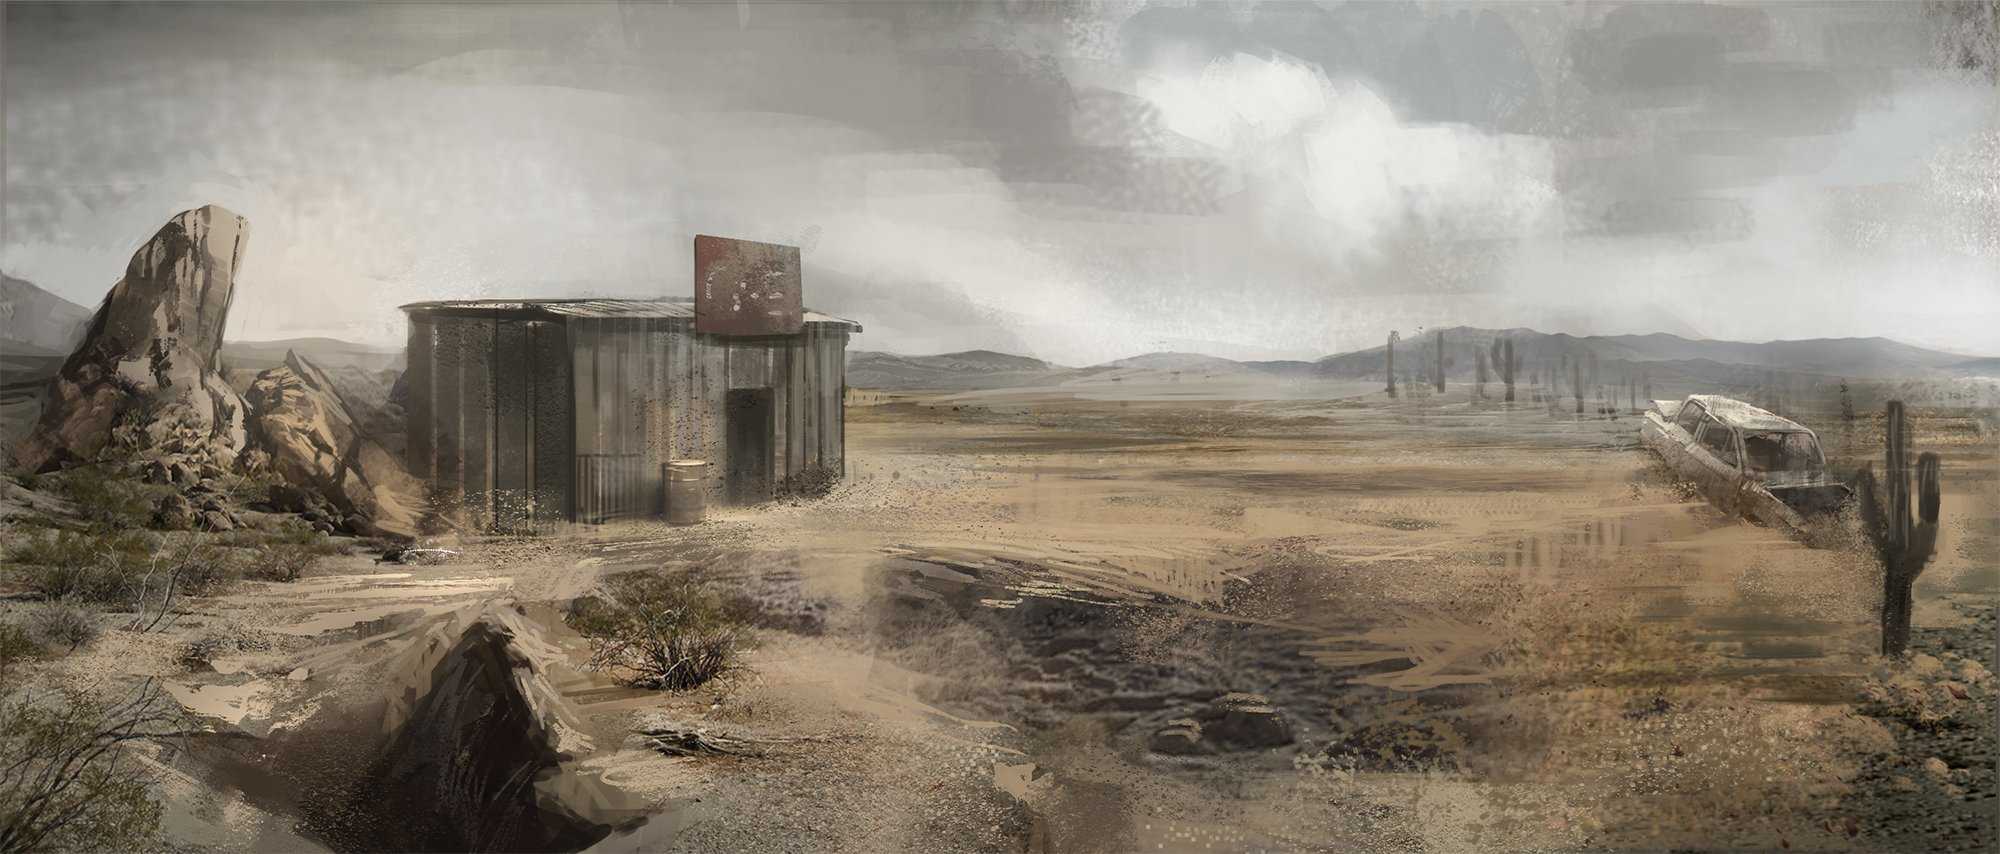 Fallout 4 unleveled wasteland фото 37